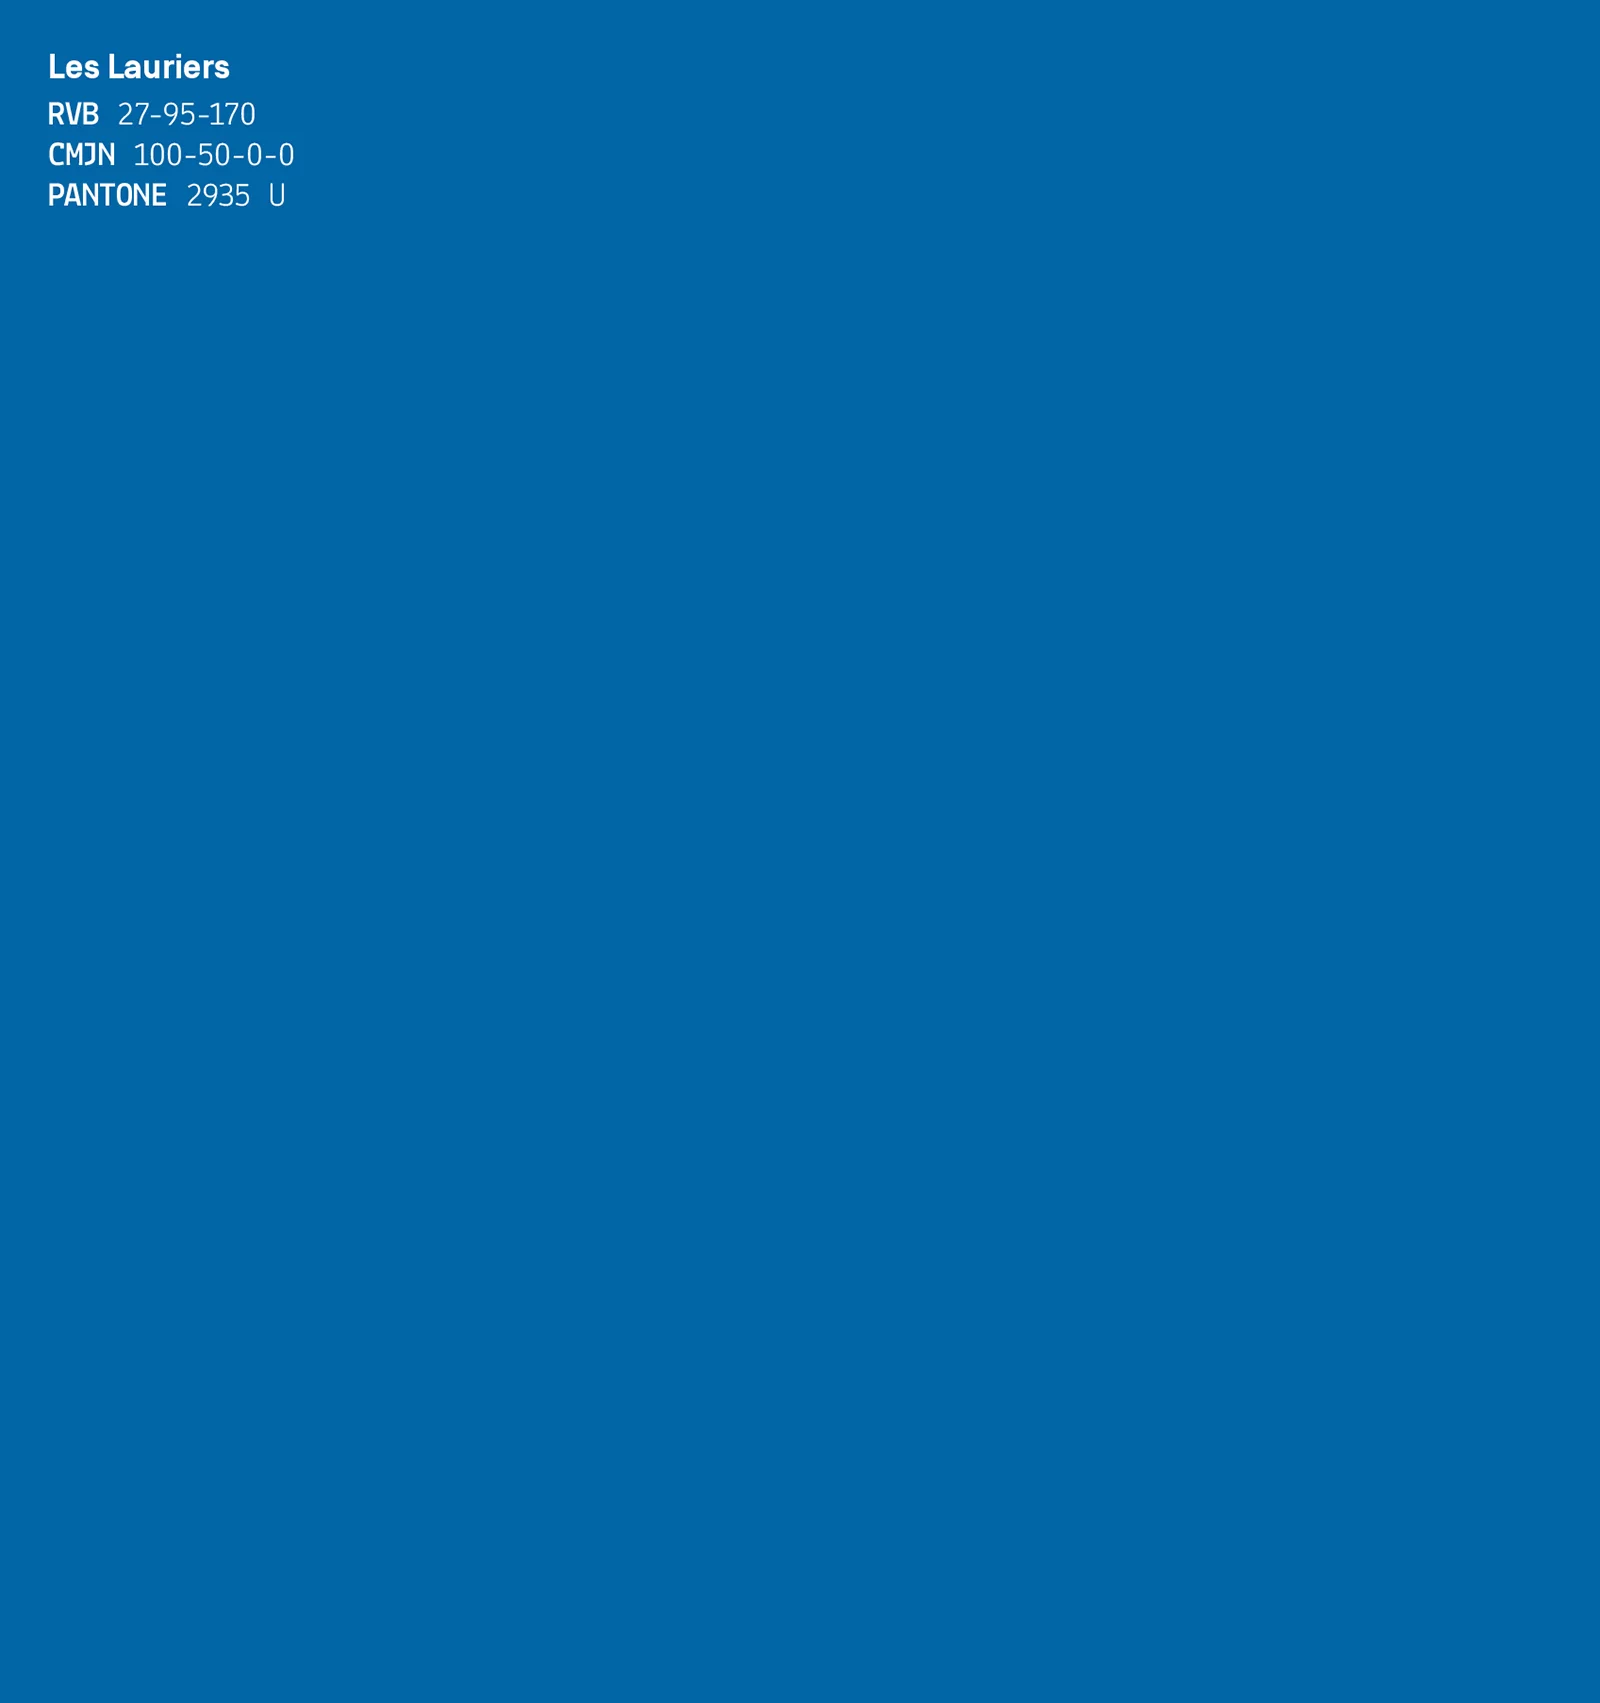 Aplat de couleur bleu nommé Les Lauriers, accompagné de ses codes colorimétriques (RVB, CMJN, Pantone)